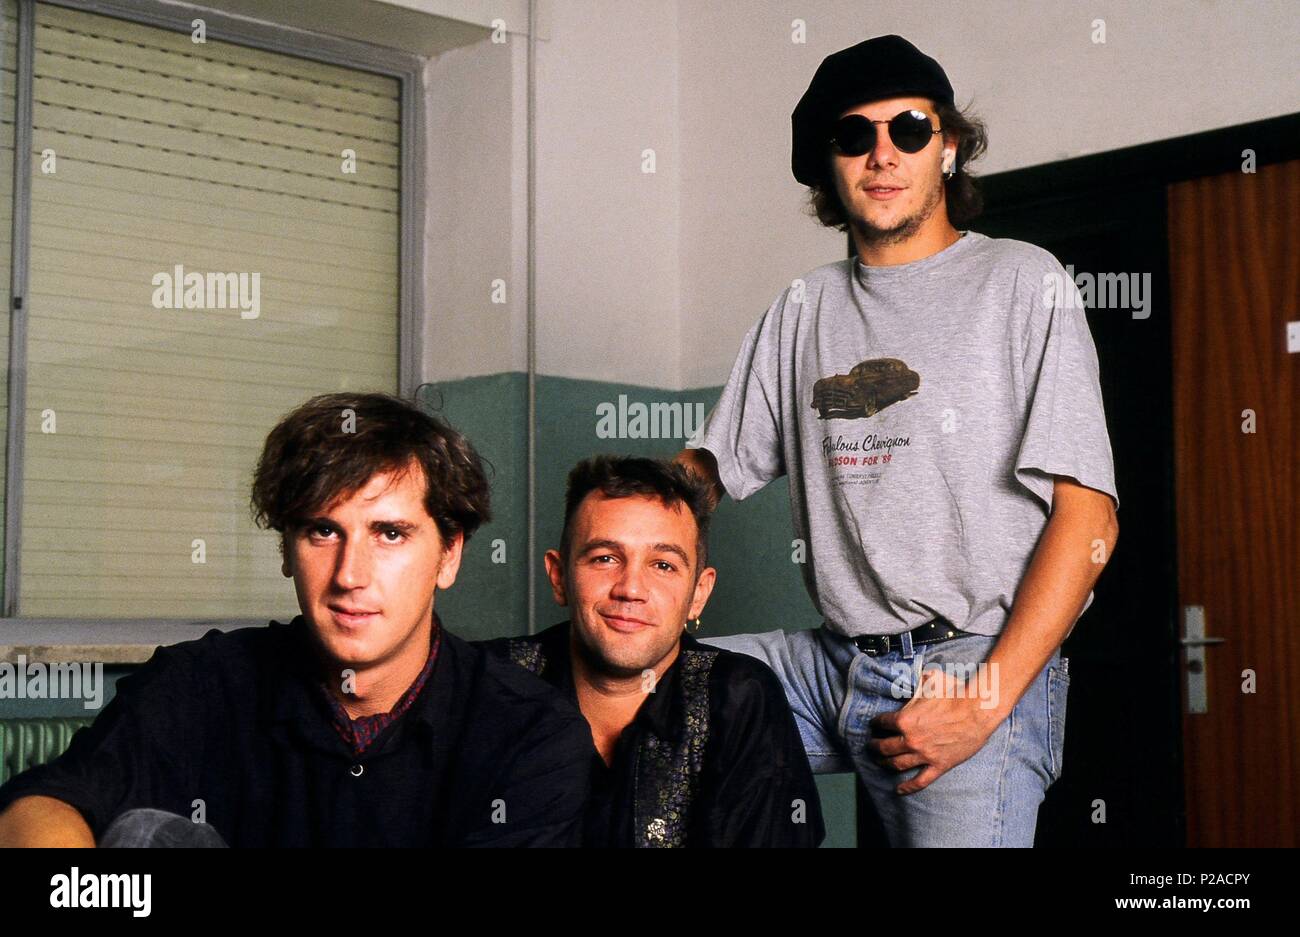 La Union, el grupo musical español creado a finales de 1982 por tres estudiantes de Publicidad: Rafa Sánchez, Mario Martínez y Luis Bolín. (61710037). Stock Photo